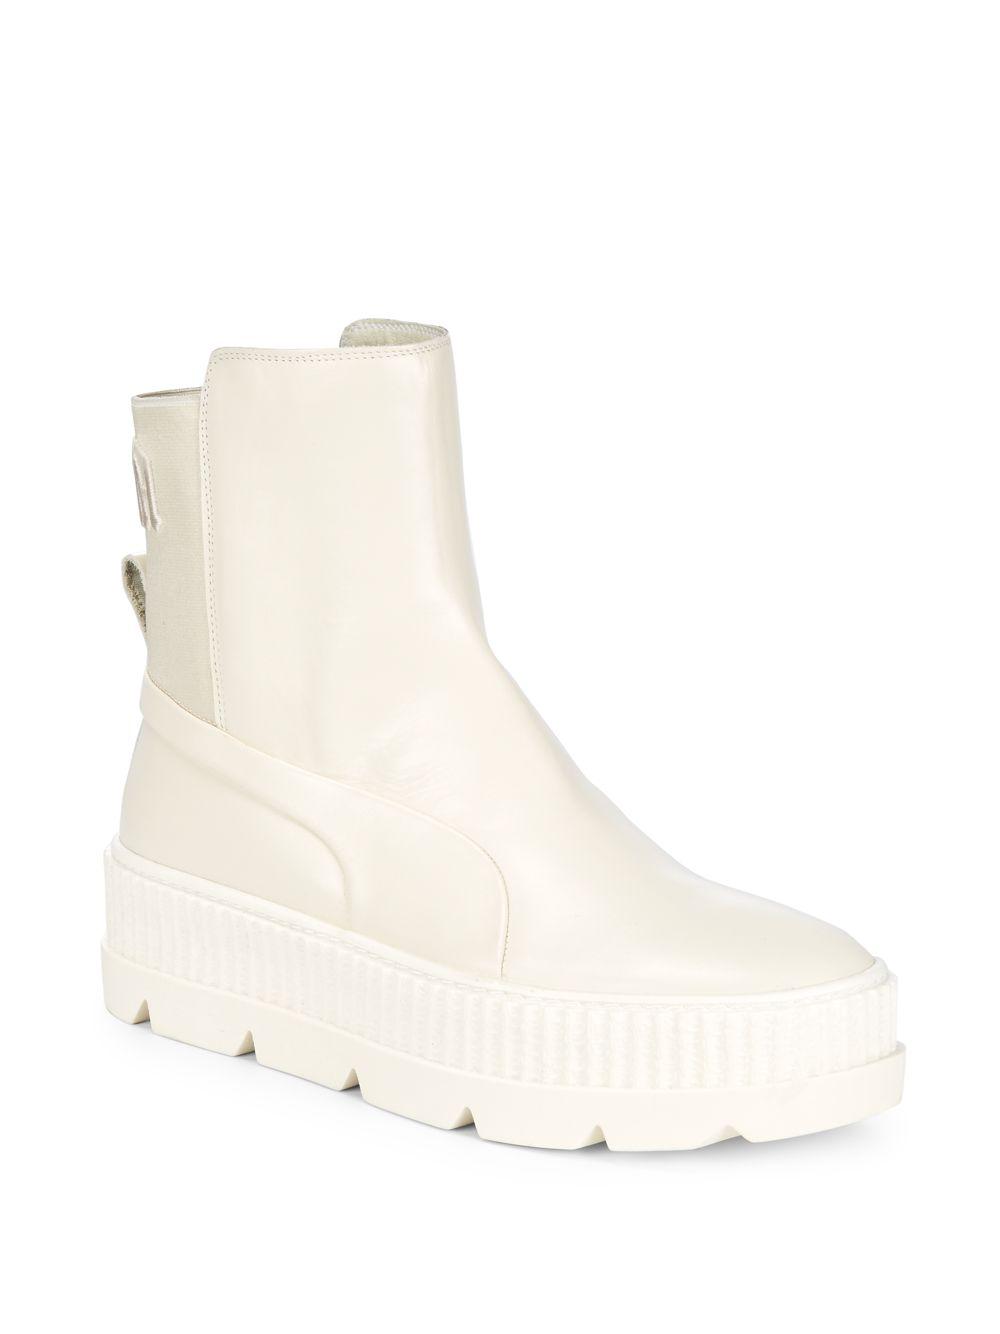 puma white boots